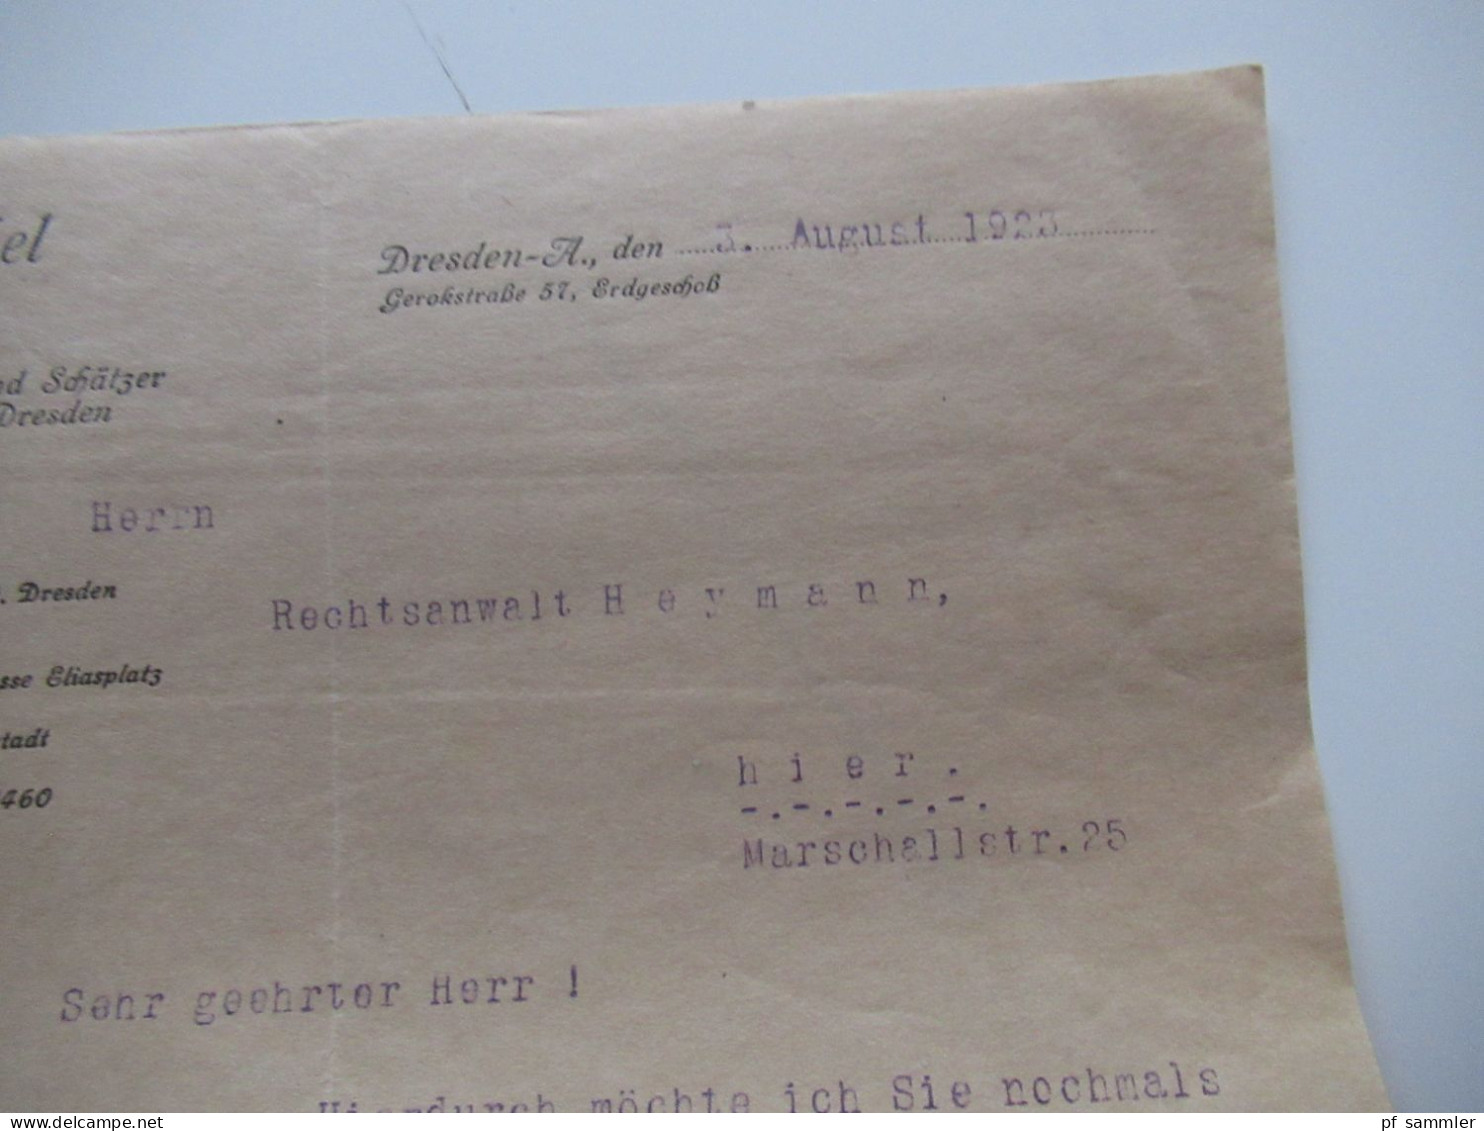 Dokumente 1x Sekuritas Prag Agentur Teplitz 1936 sonst einiges Dresden / 1920 / 1930er Jahre / Interessant??!!